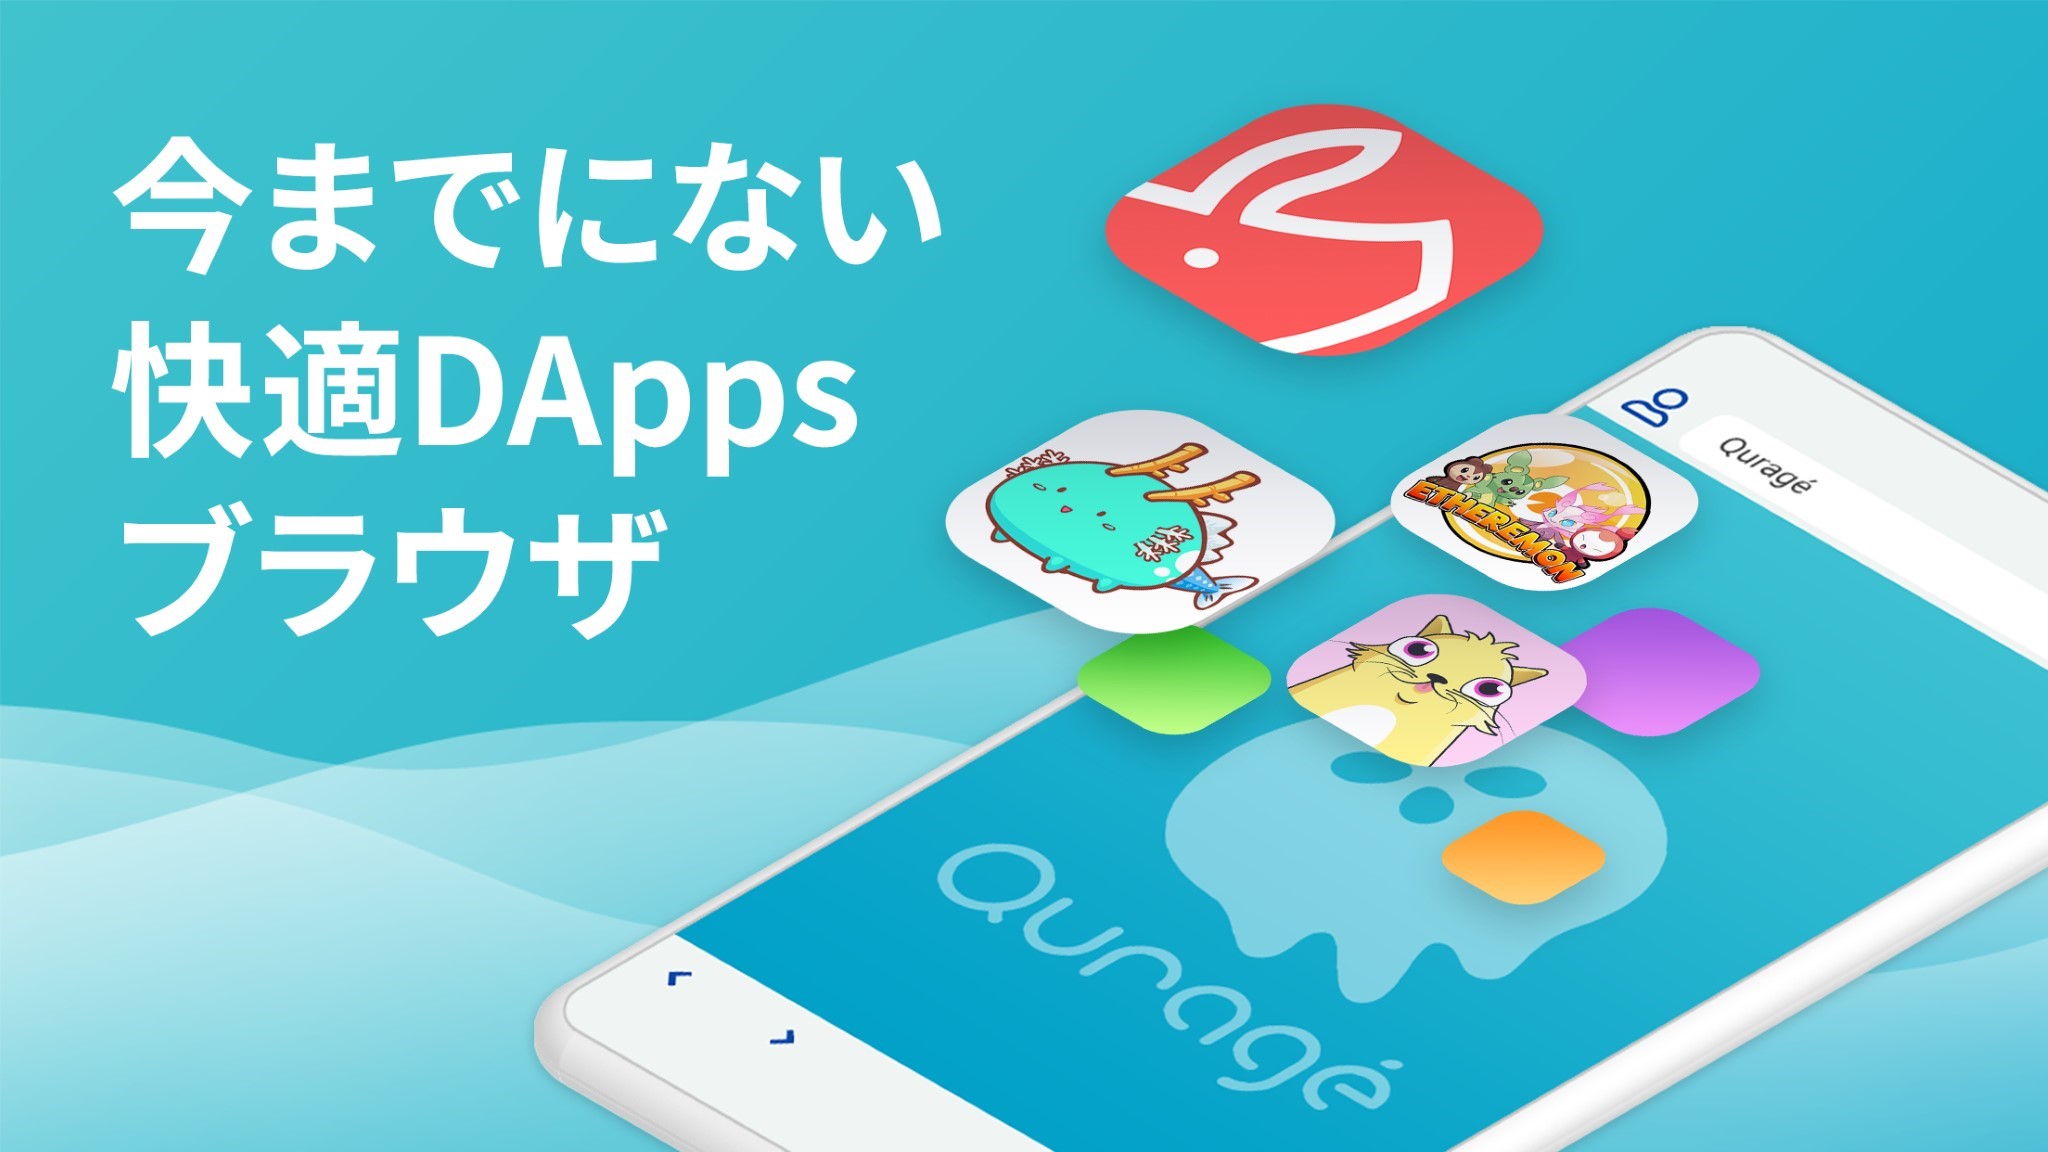 スマホで最⾼の DApps 体験を実現︕ ブロックチェーンに特化した新時代のブラウ ザ「Quragé (クラゲ)」iOS 版リリース︕